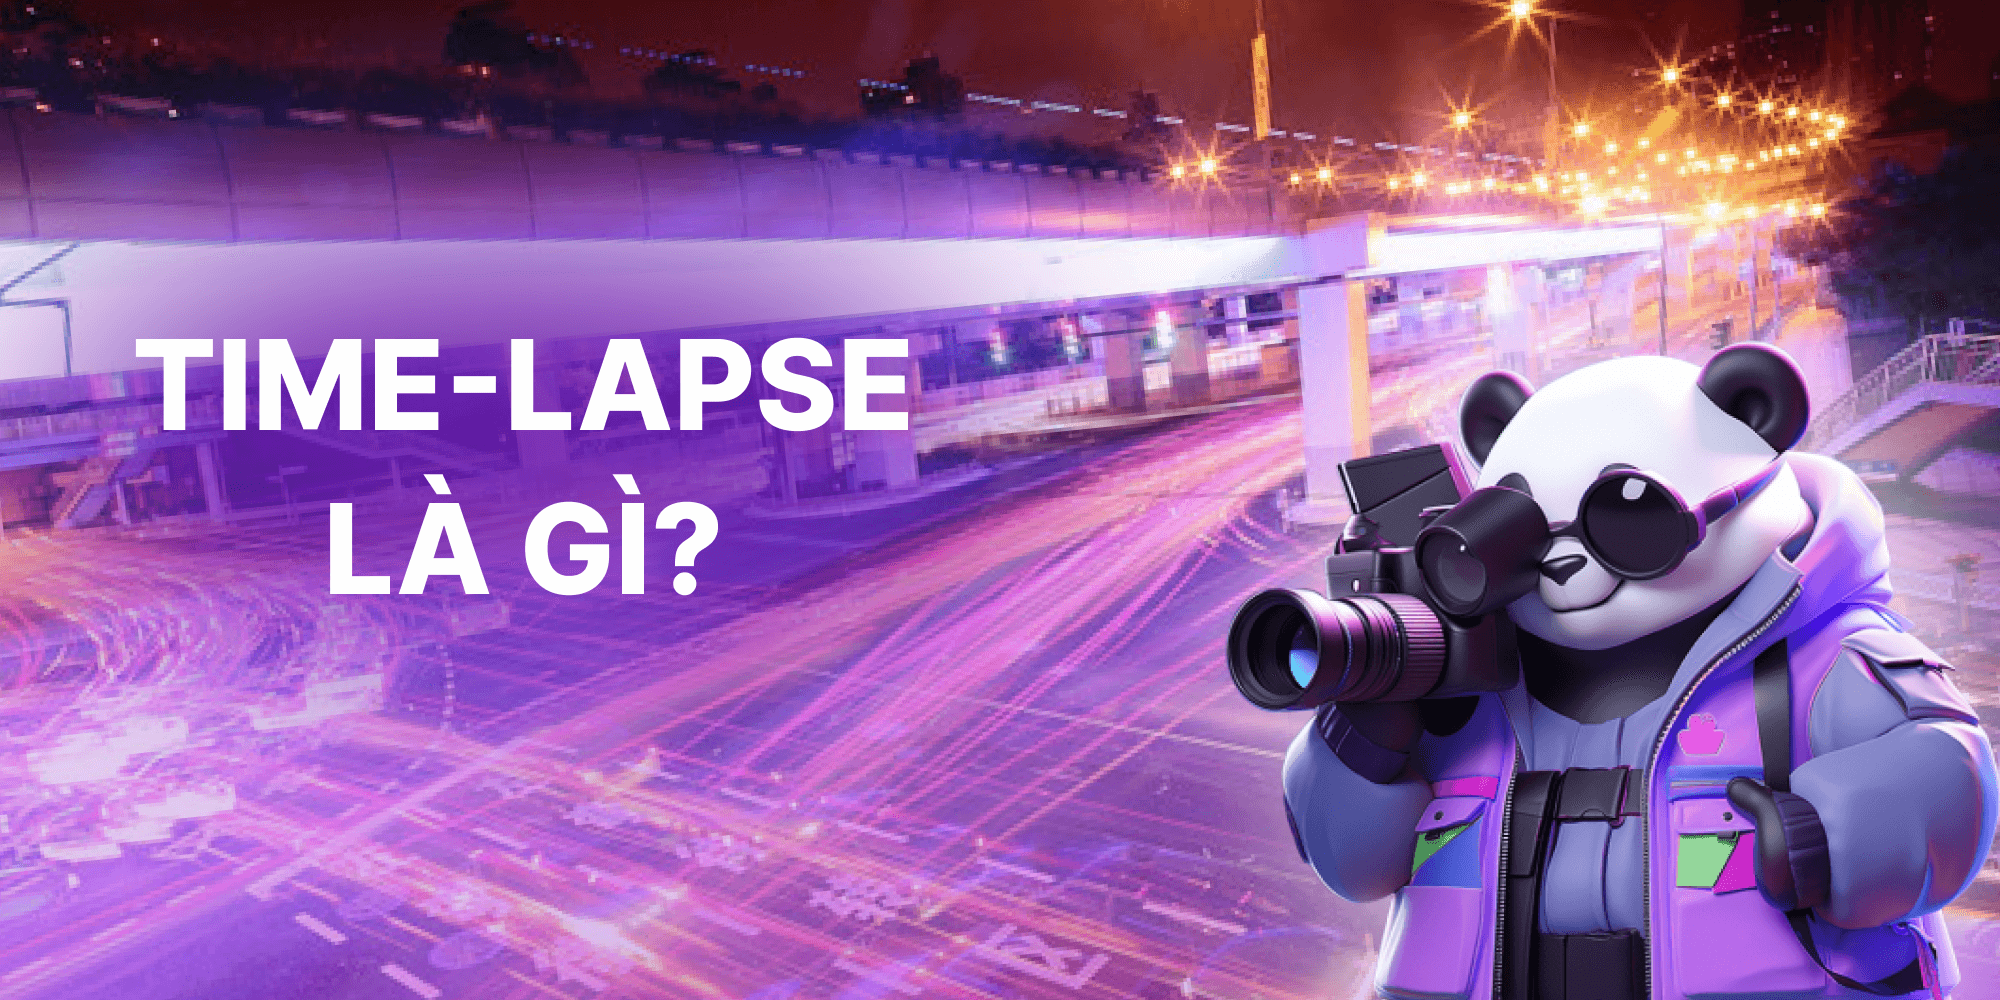 Tìm hiểu cách quay Time lapse là gì?